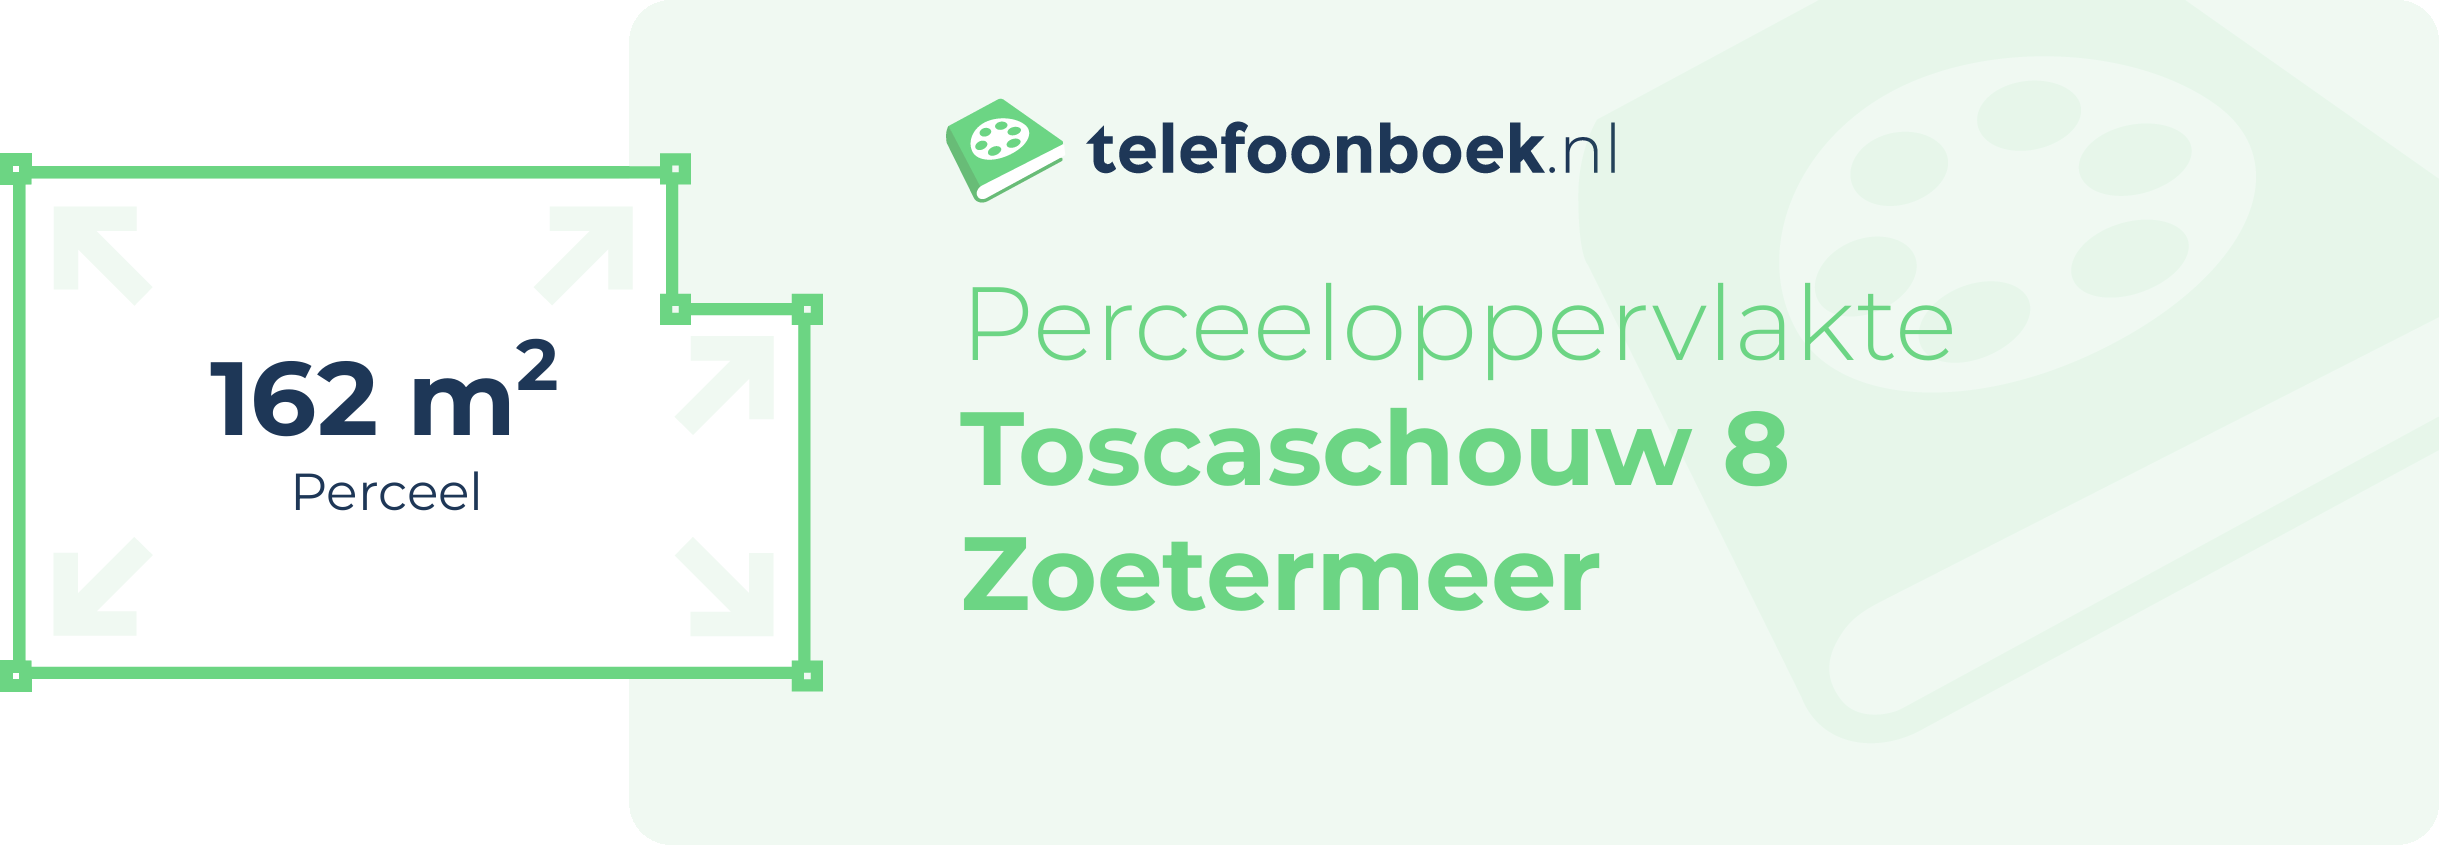 Perceeloppervlakte Toscaschouw 8 Zoetermeer